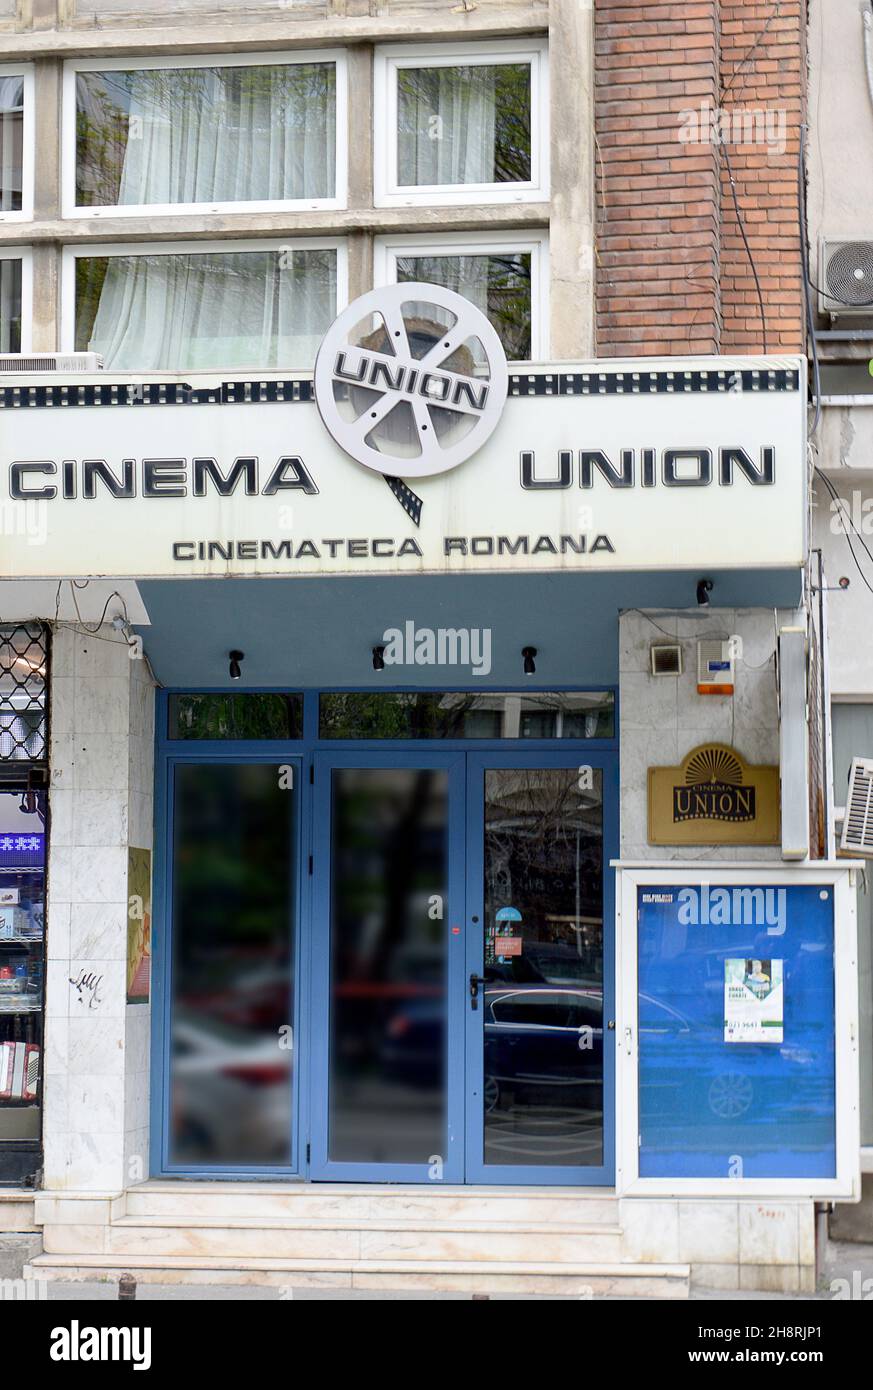 BUCAREST. RUMANIA - 24 DE ABRIL de 2021: El Uniob Cimema. Uno de los últimos cines de arte-hise en la capital rumana en la strada Ion Campineanu. Foto de stock